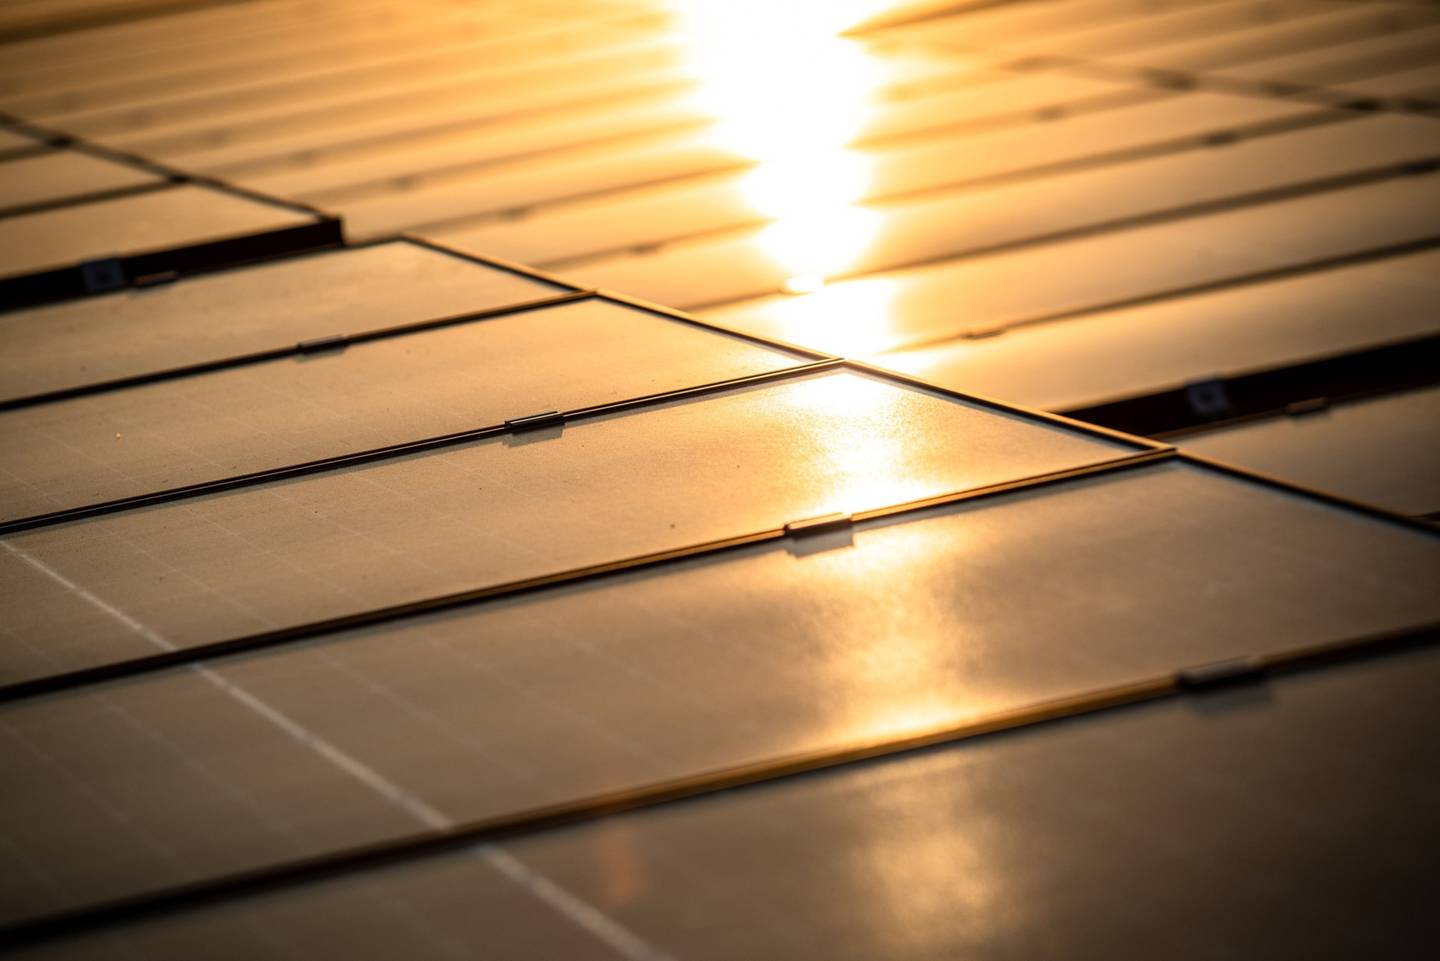 La Comisión Reguladora de Energía (CRE) en México publicará las regulaciones para la Generación Distribuida, conocida como techos solares